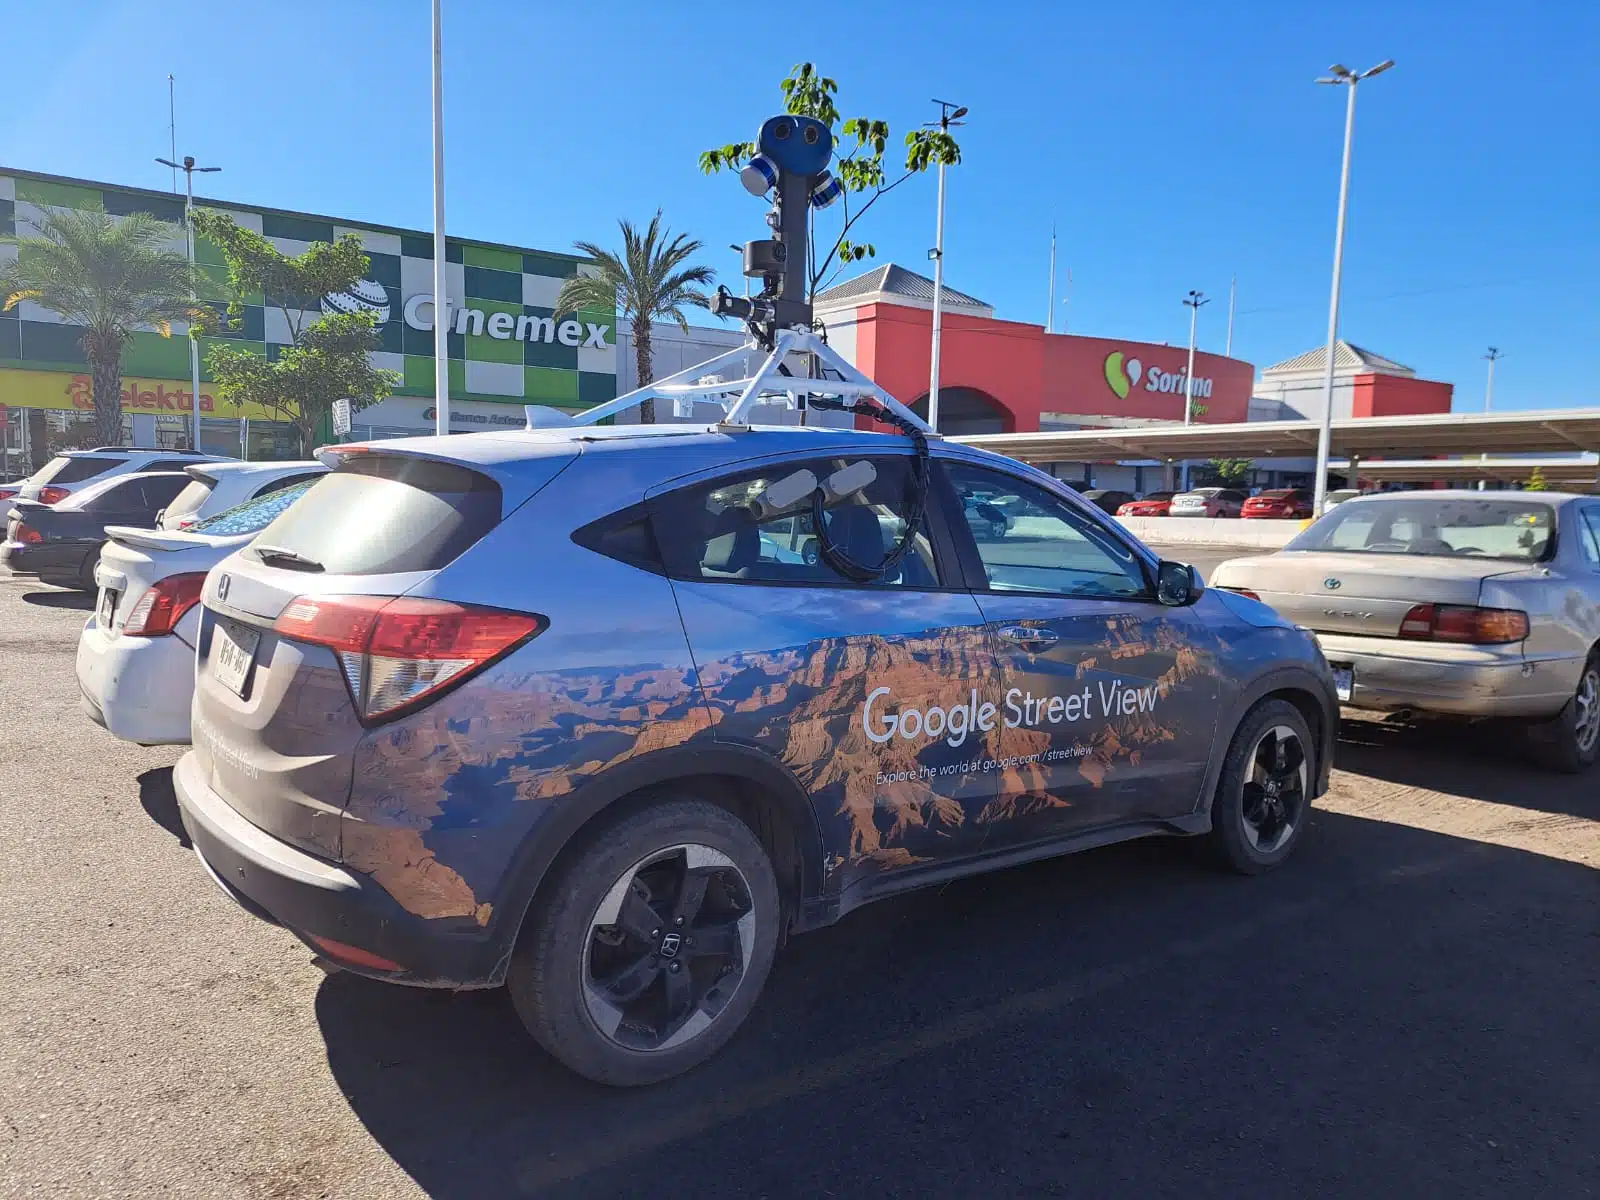 El vehículo de Google Street View fue visto en Culiacán